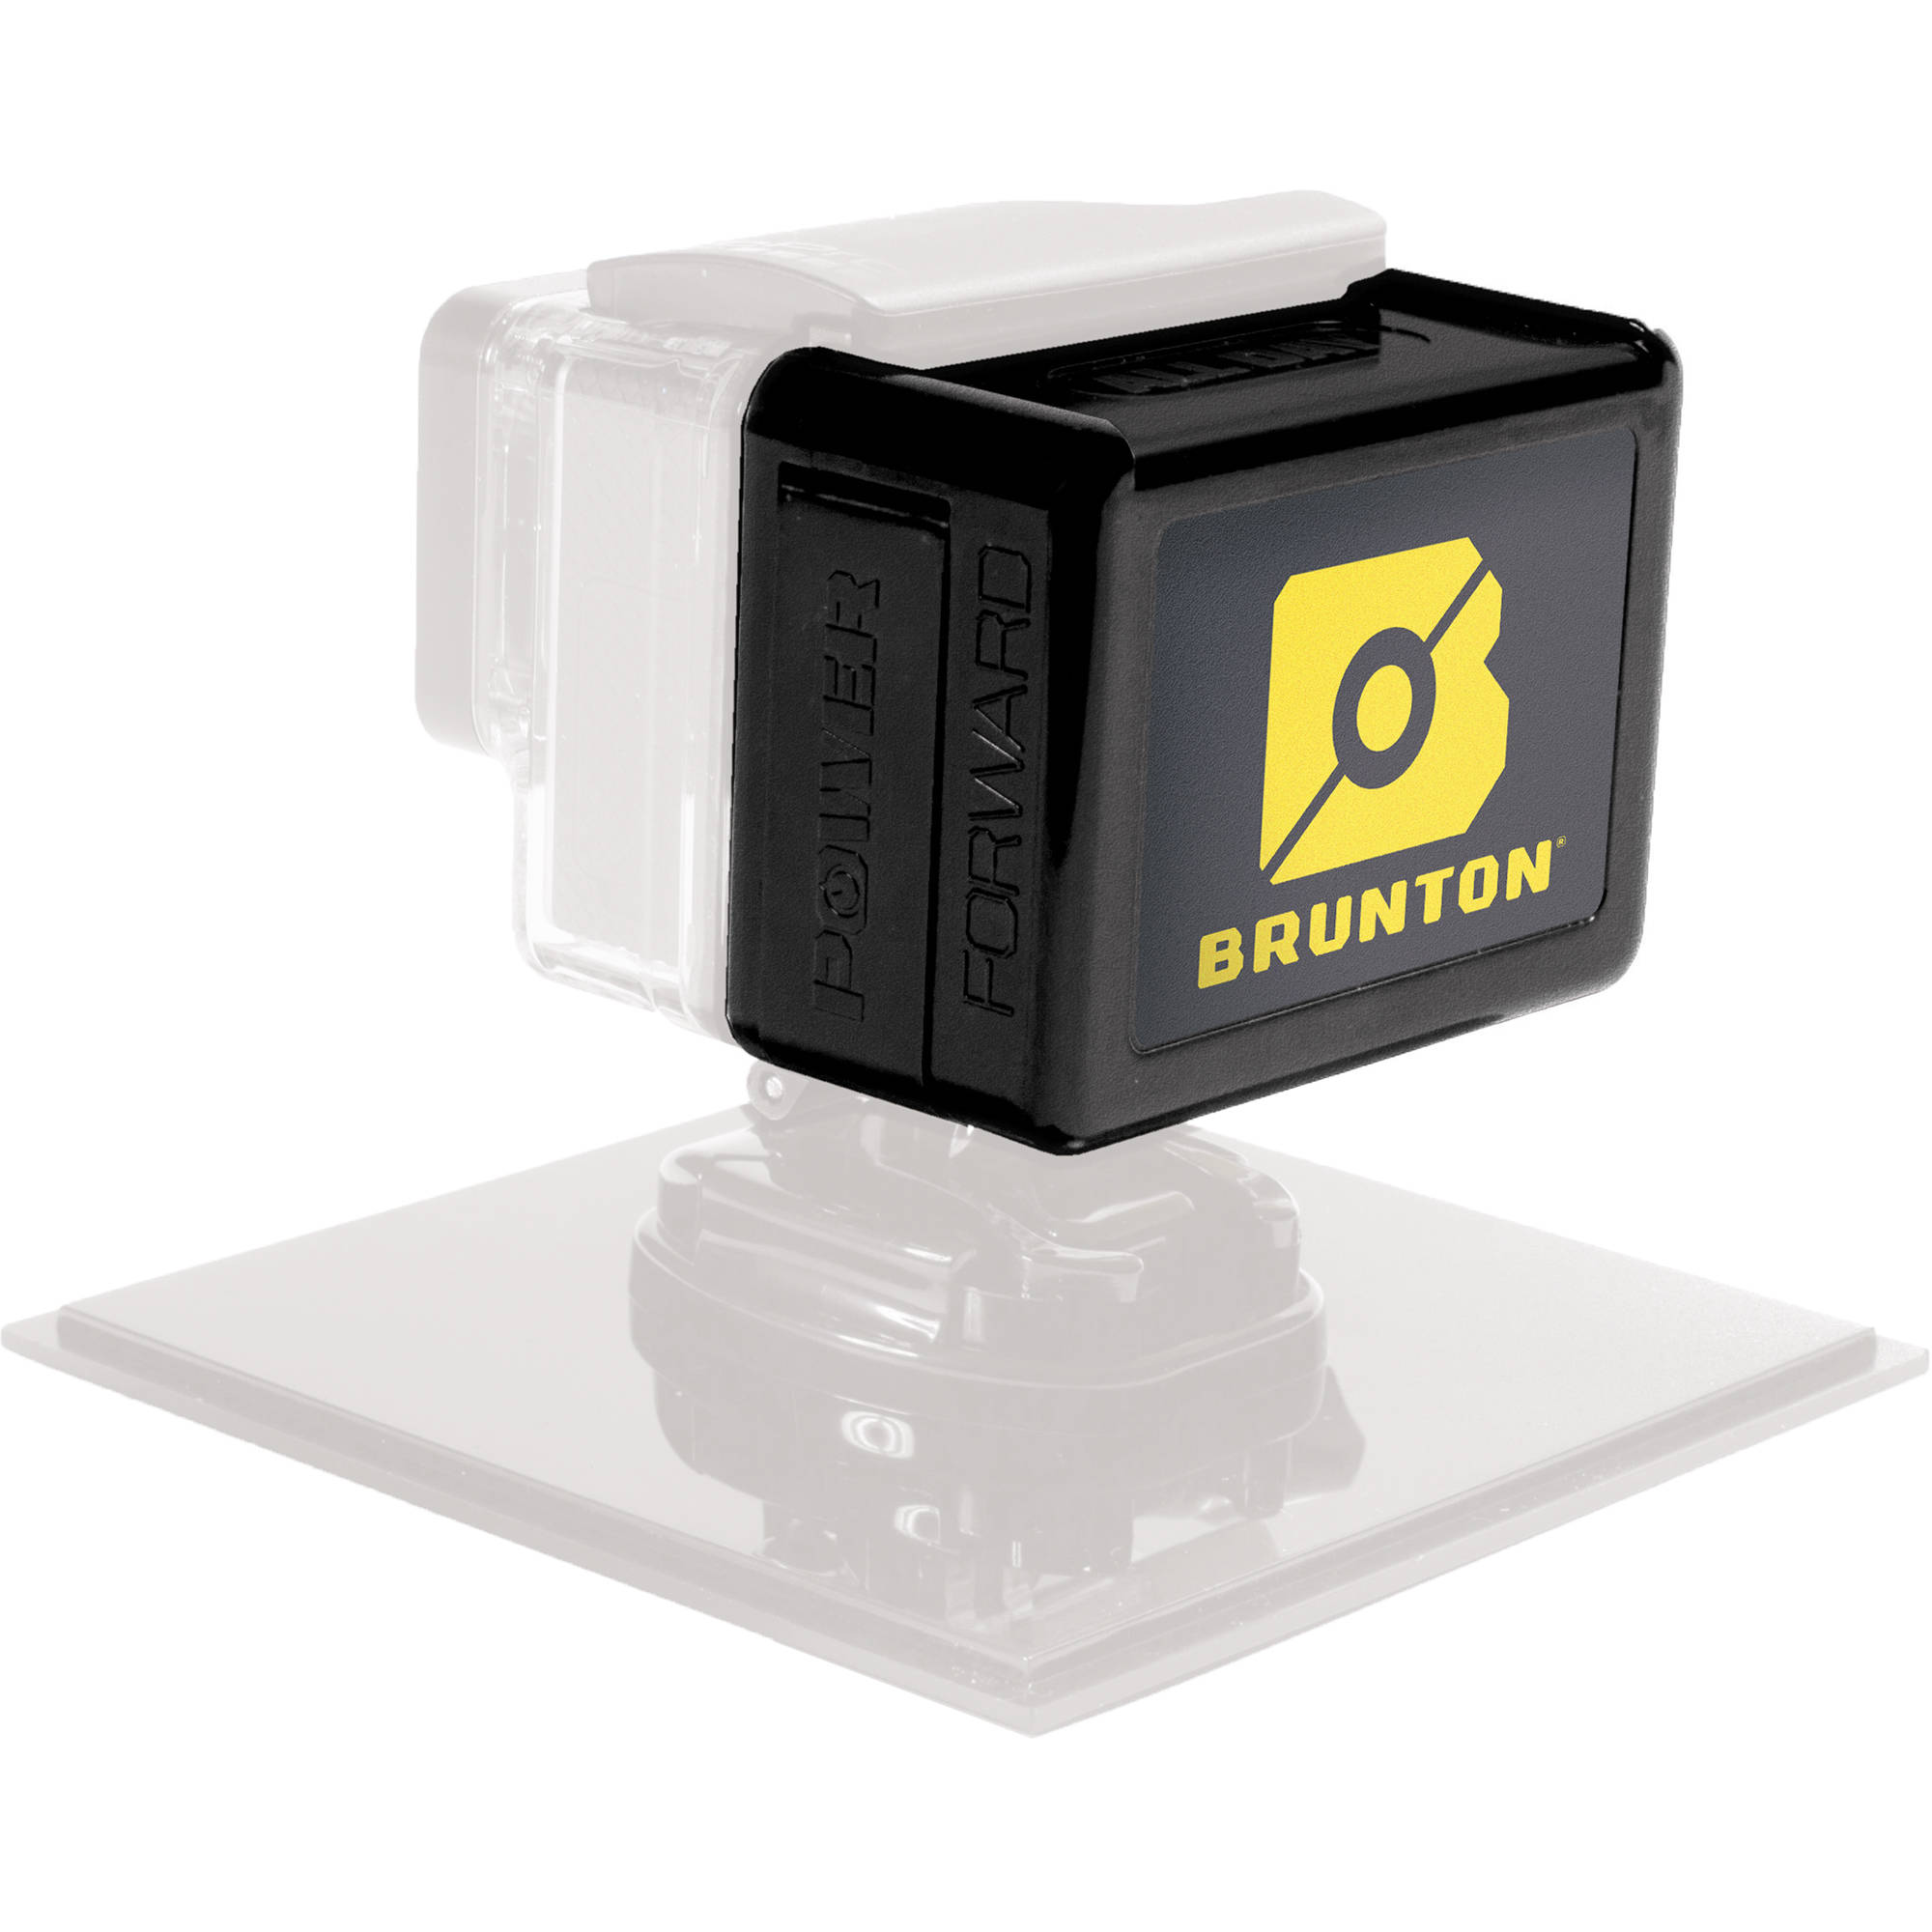 Brunton Allday Extended Battery Back For Gopro Hero3